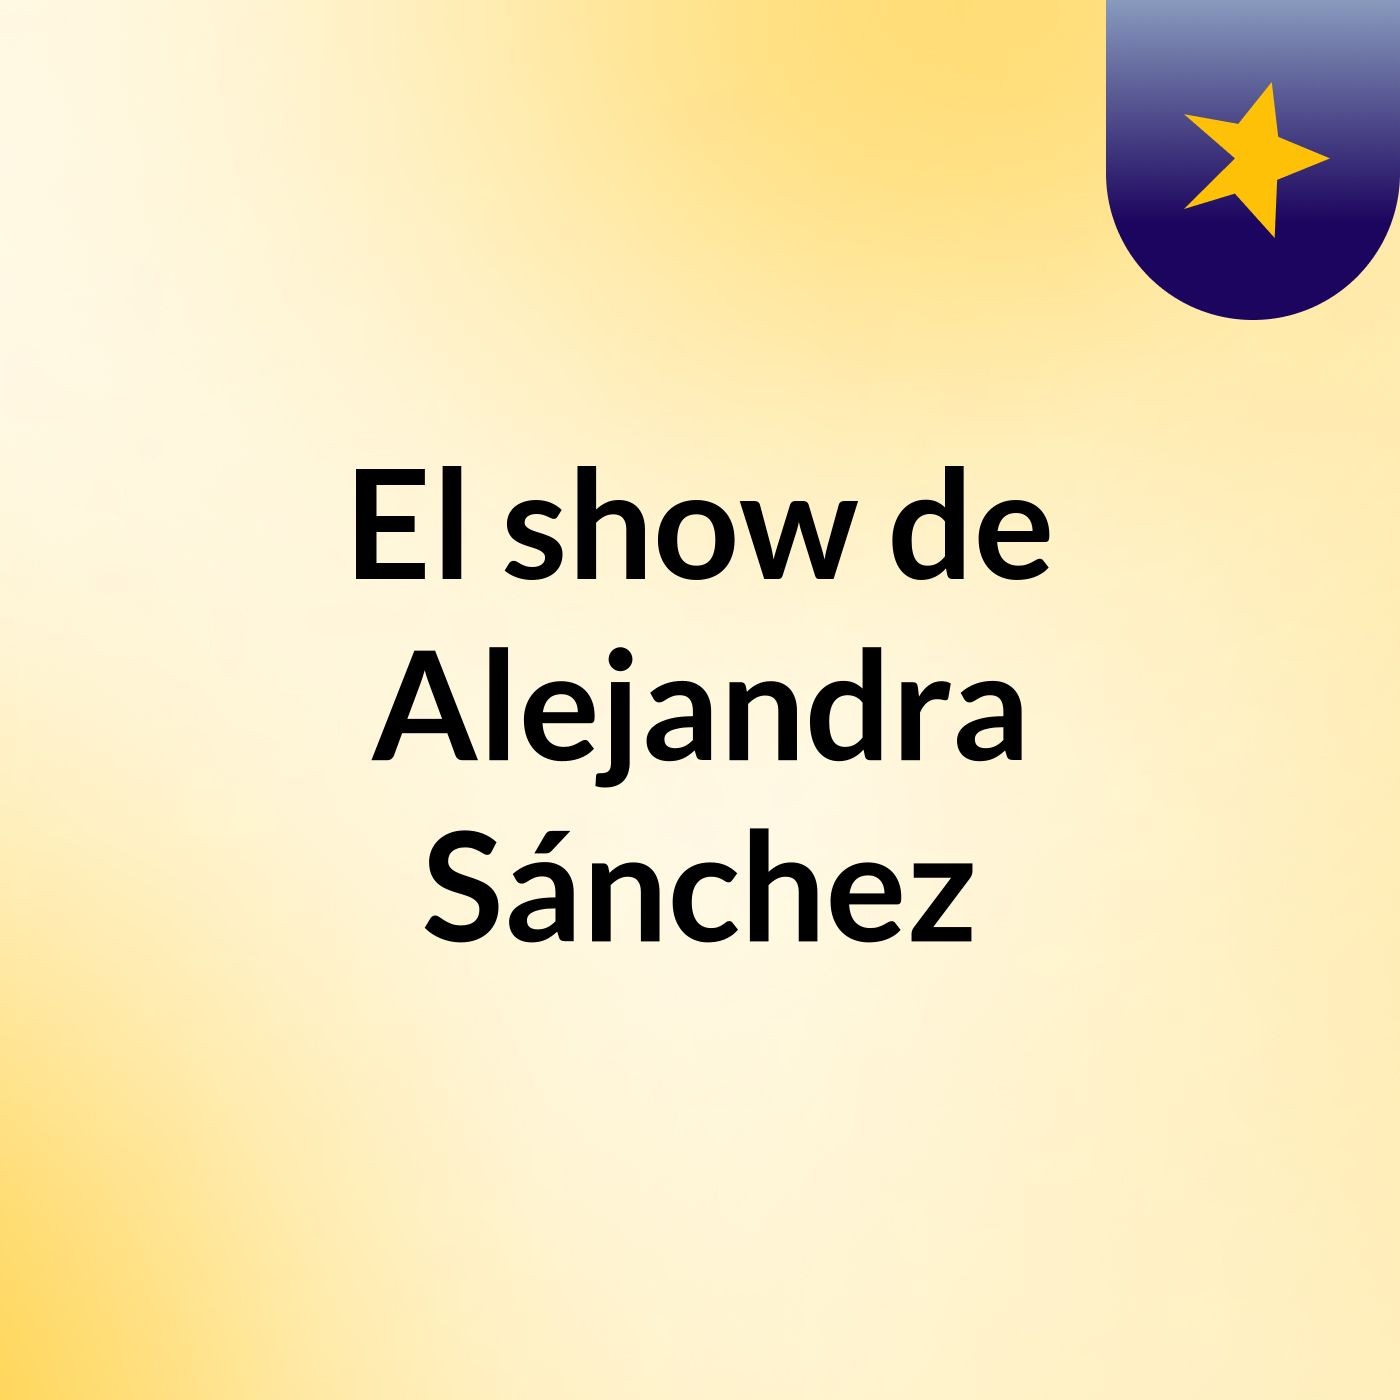 El show de Alejandra Sánchez